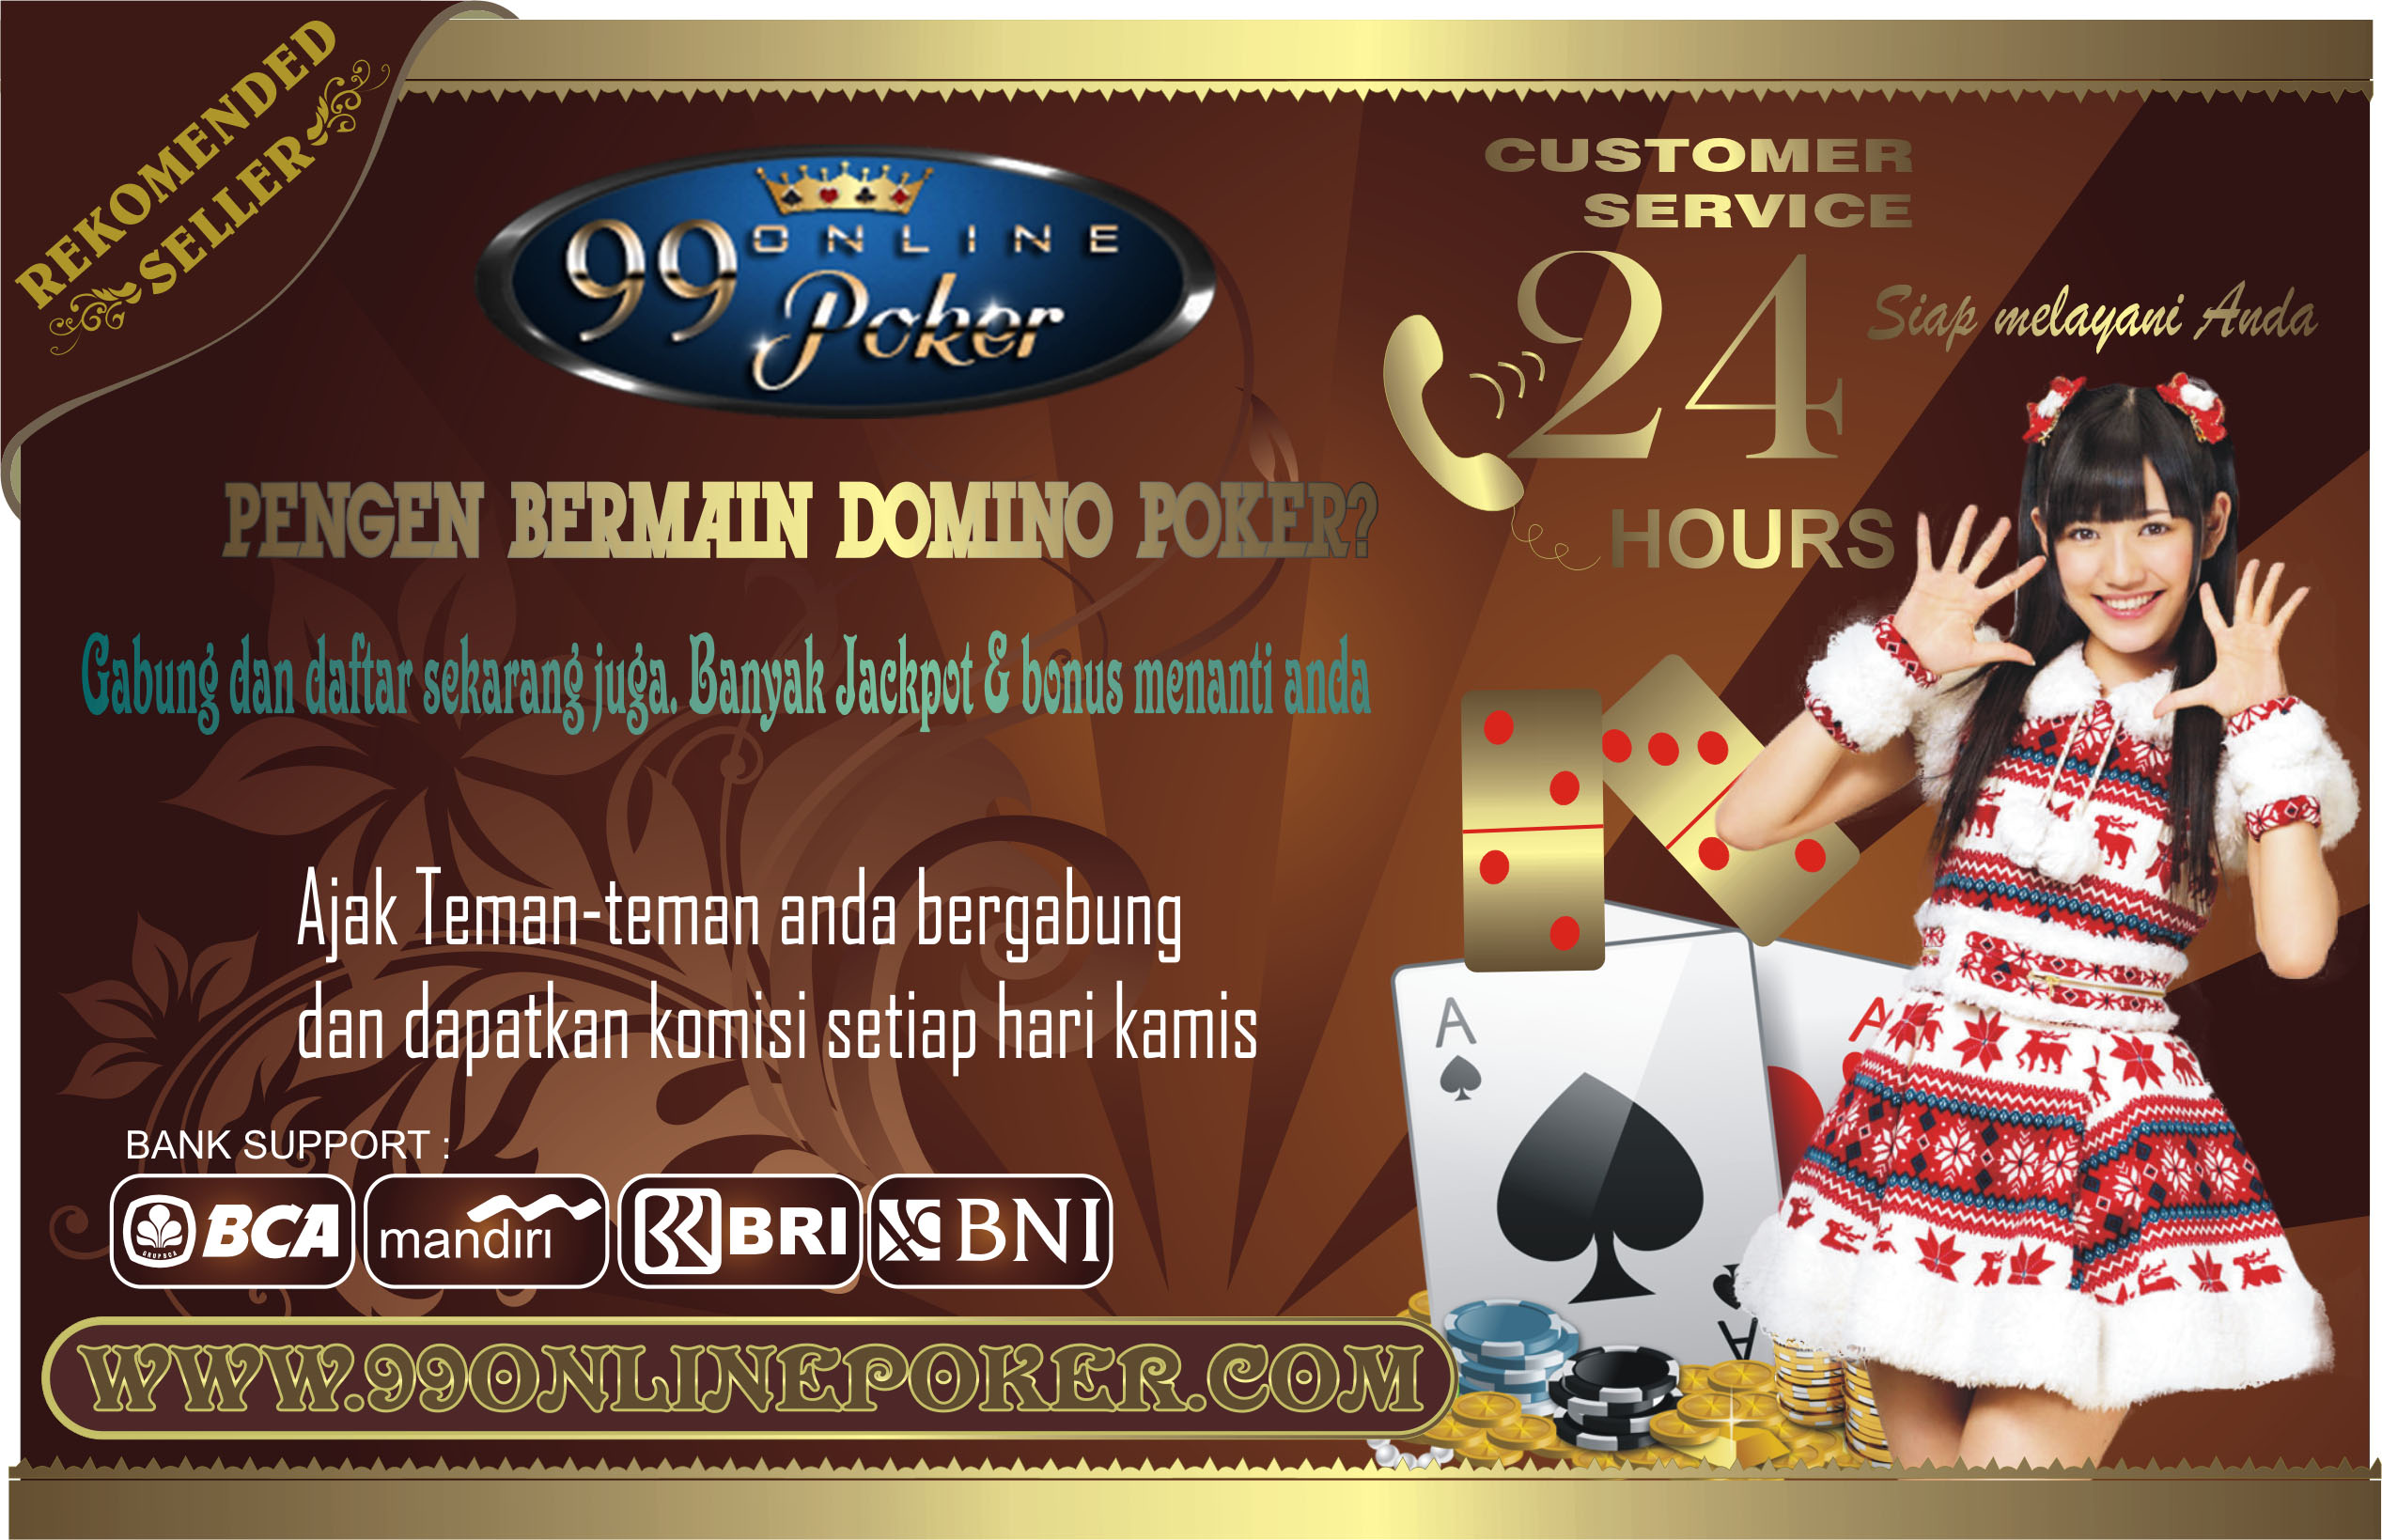 idrpoker com agen texas poker online indonesia terpercaya